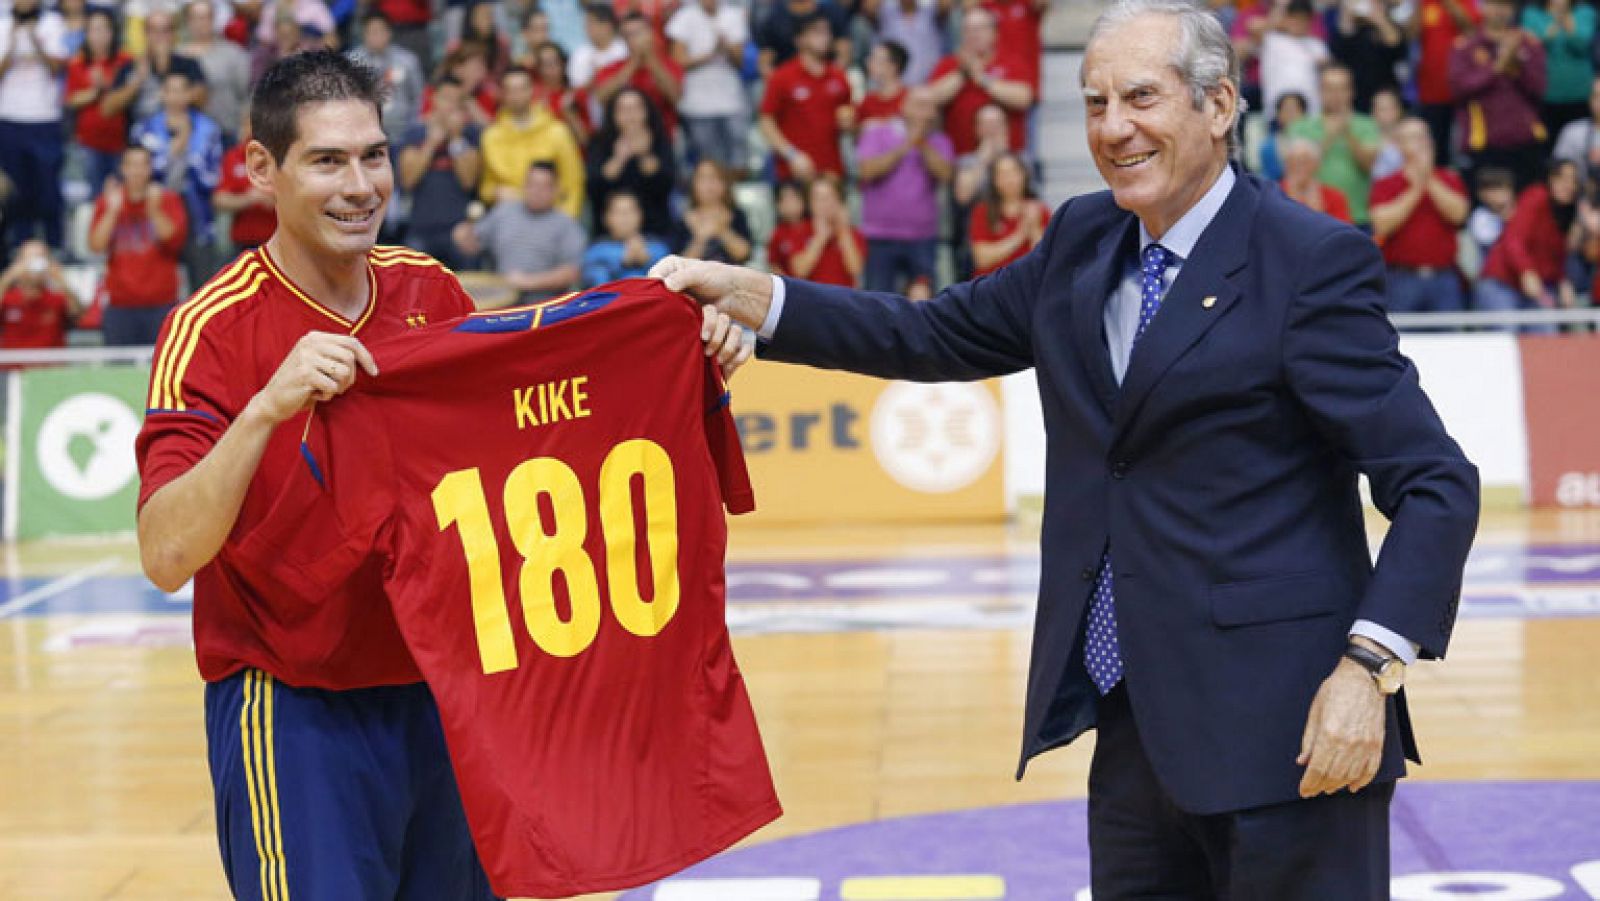 Telediario 1: La selección española de fútbol sala homenajea a Kike Boned tras 180 internacionalidades | RTVE Play